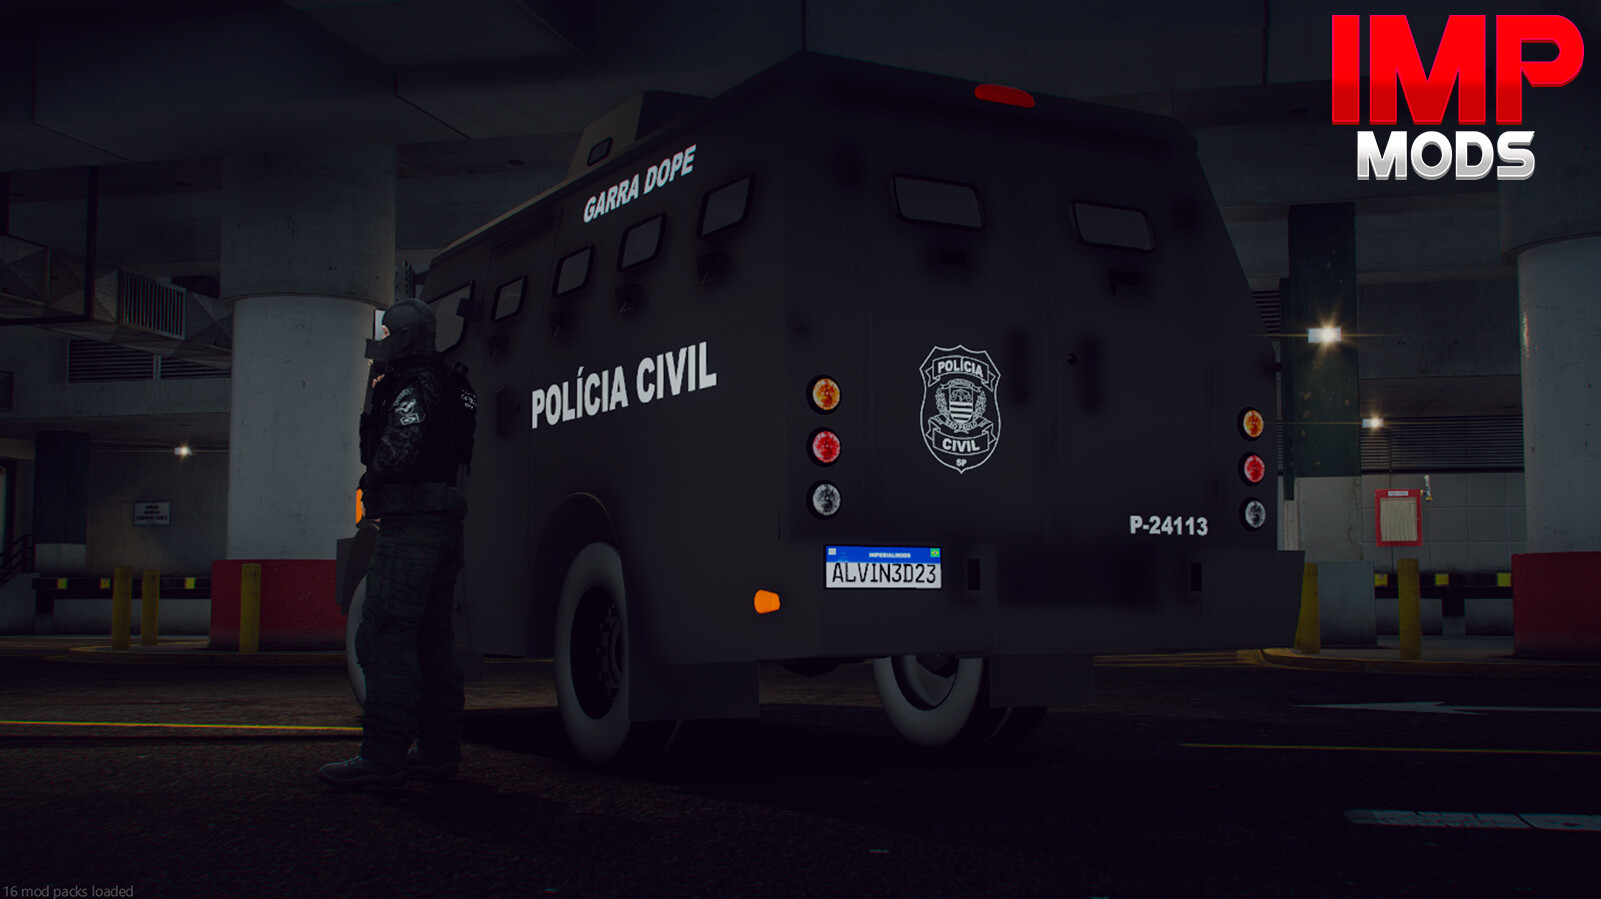 ArtStation - Corolla 2022 POLÍCIA FEDERAL (FIVEM/GTAV)